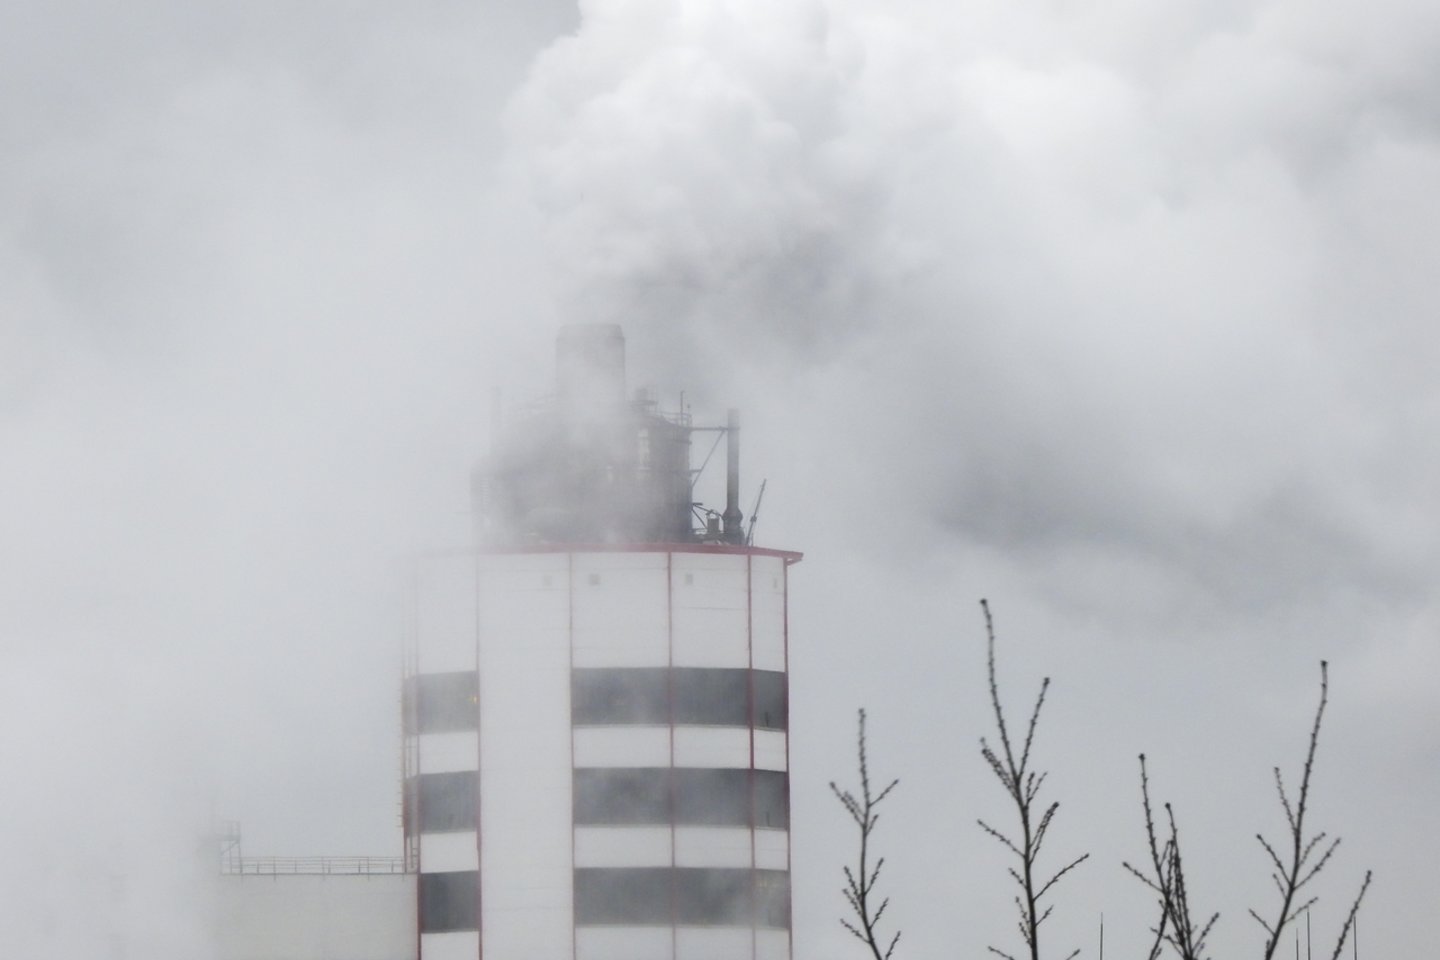 Didžiausi pasaulio bankai iškastinio kuro pramonei per penkerius metus po Paryžiaus klimato susitarimo pasirašymo suteikė 3,8 trln. JAV dolerių finansavimo, antradienį pranešė nevyriausybinių organizacijų grupė.<br>V.Ščiavinsko nuotr.